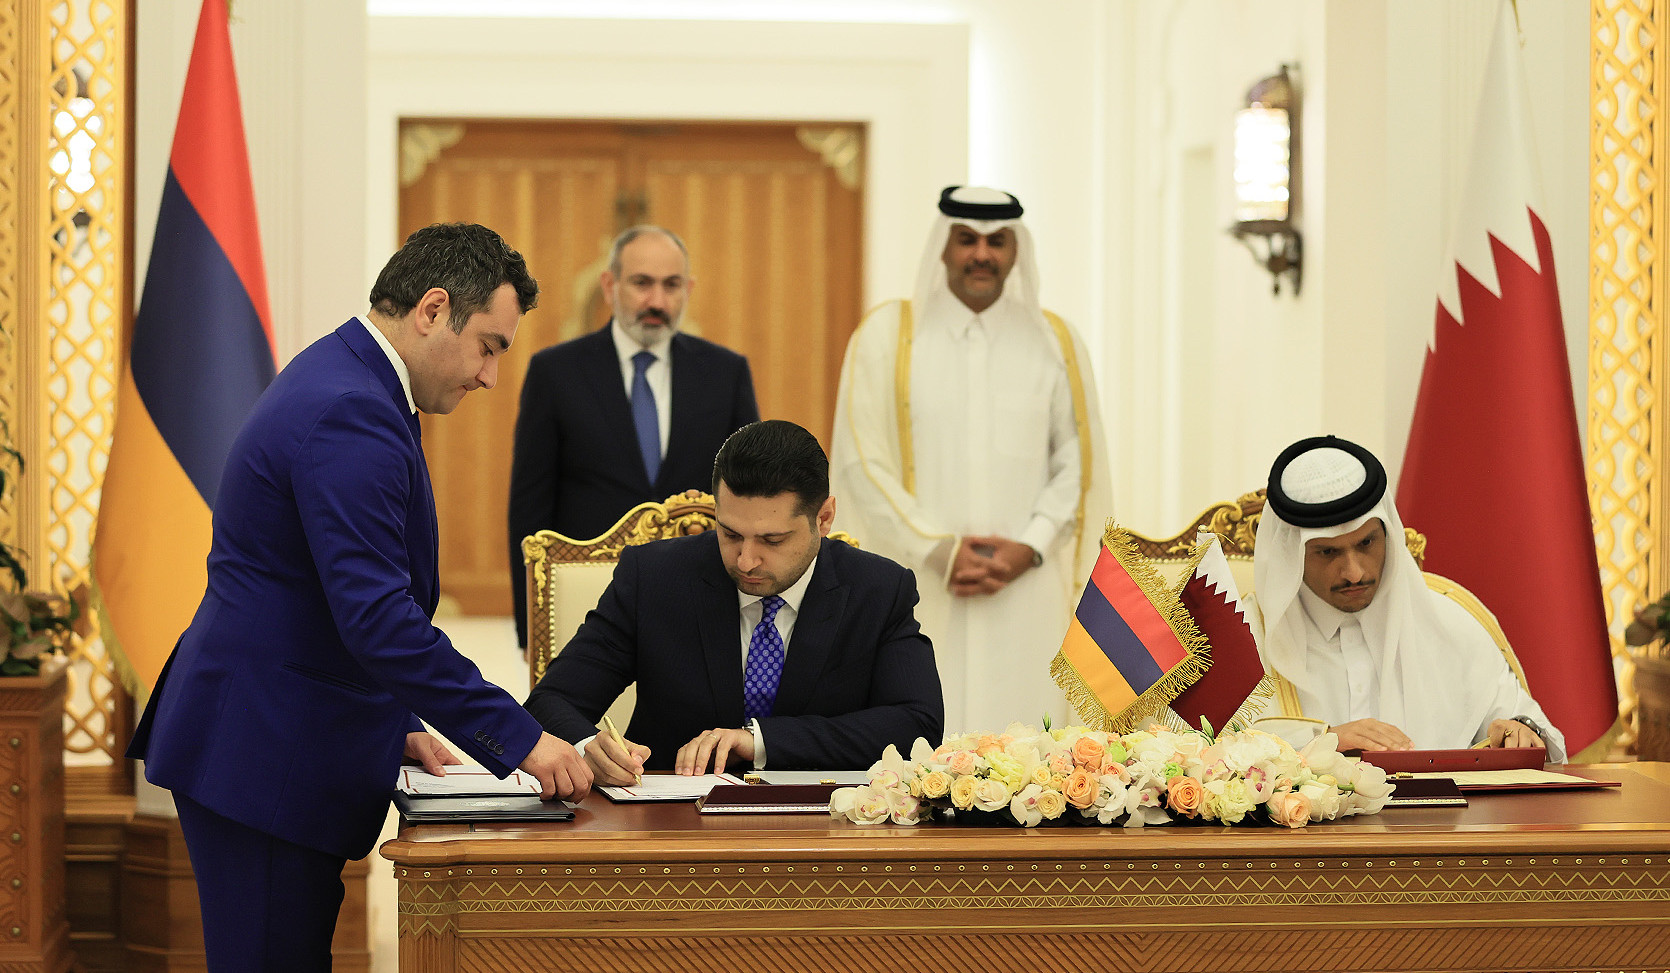 Տեղի է ունեցել Հայաստանի և Կատարի վարչապետների հանդիպումը. ստորագրվել են մի շարք փաստաթղթեր